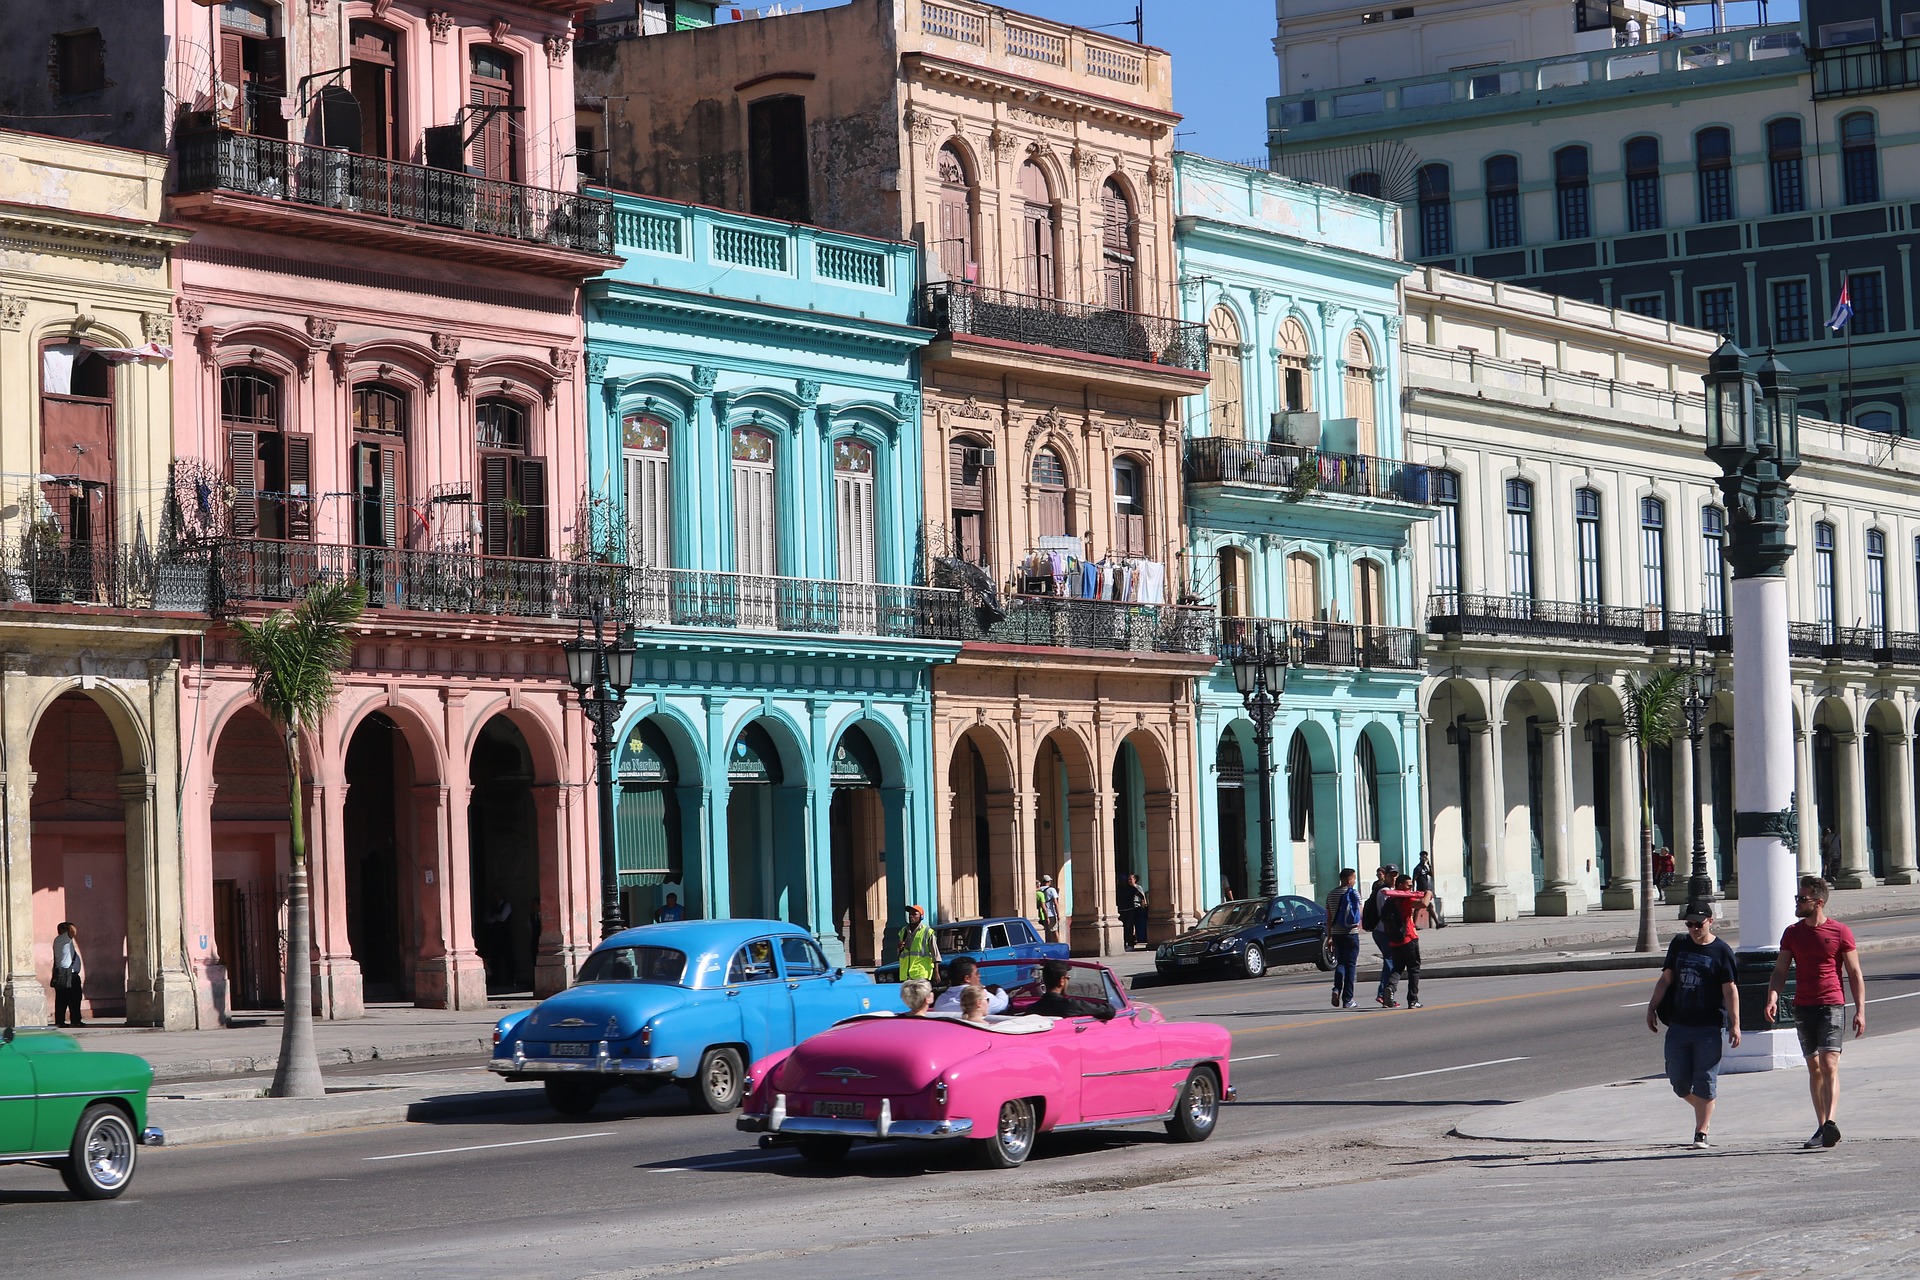 Ретроавтомобили всех цветов радуги: добро пожаловать на Кубу